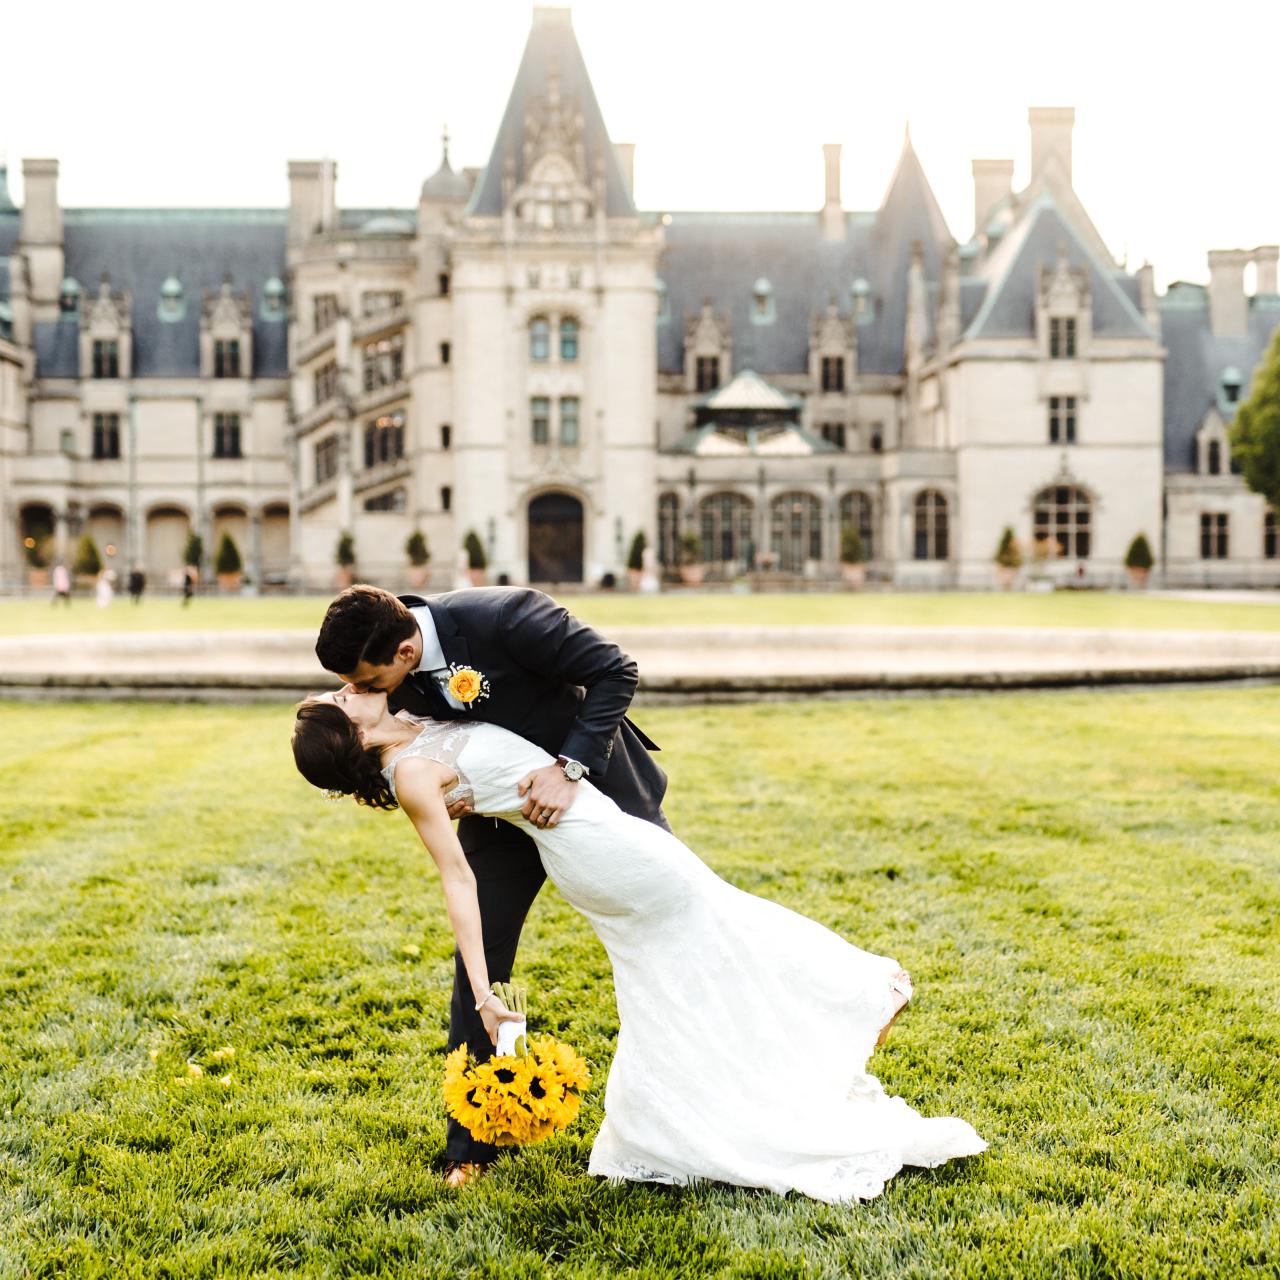 Castle Wedding Venues in the U.S., Weddings